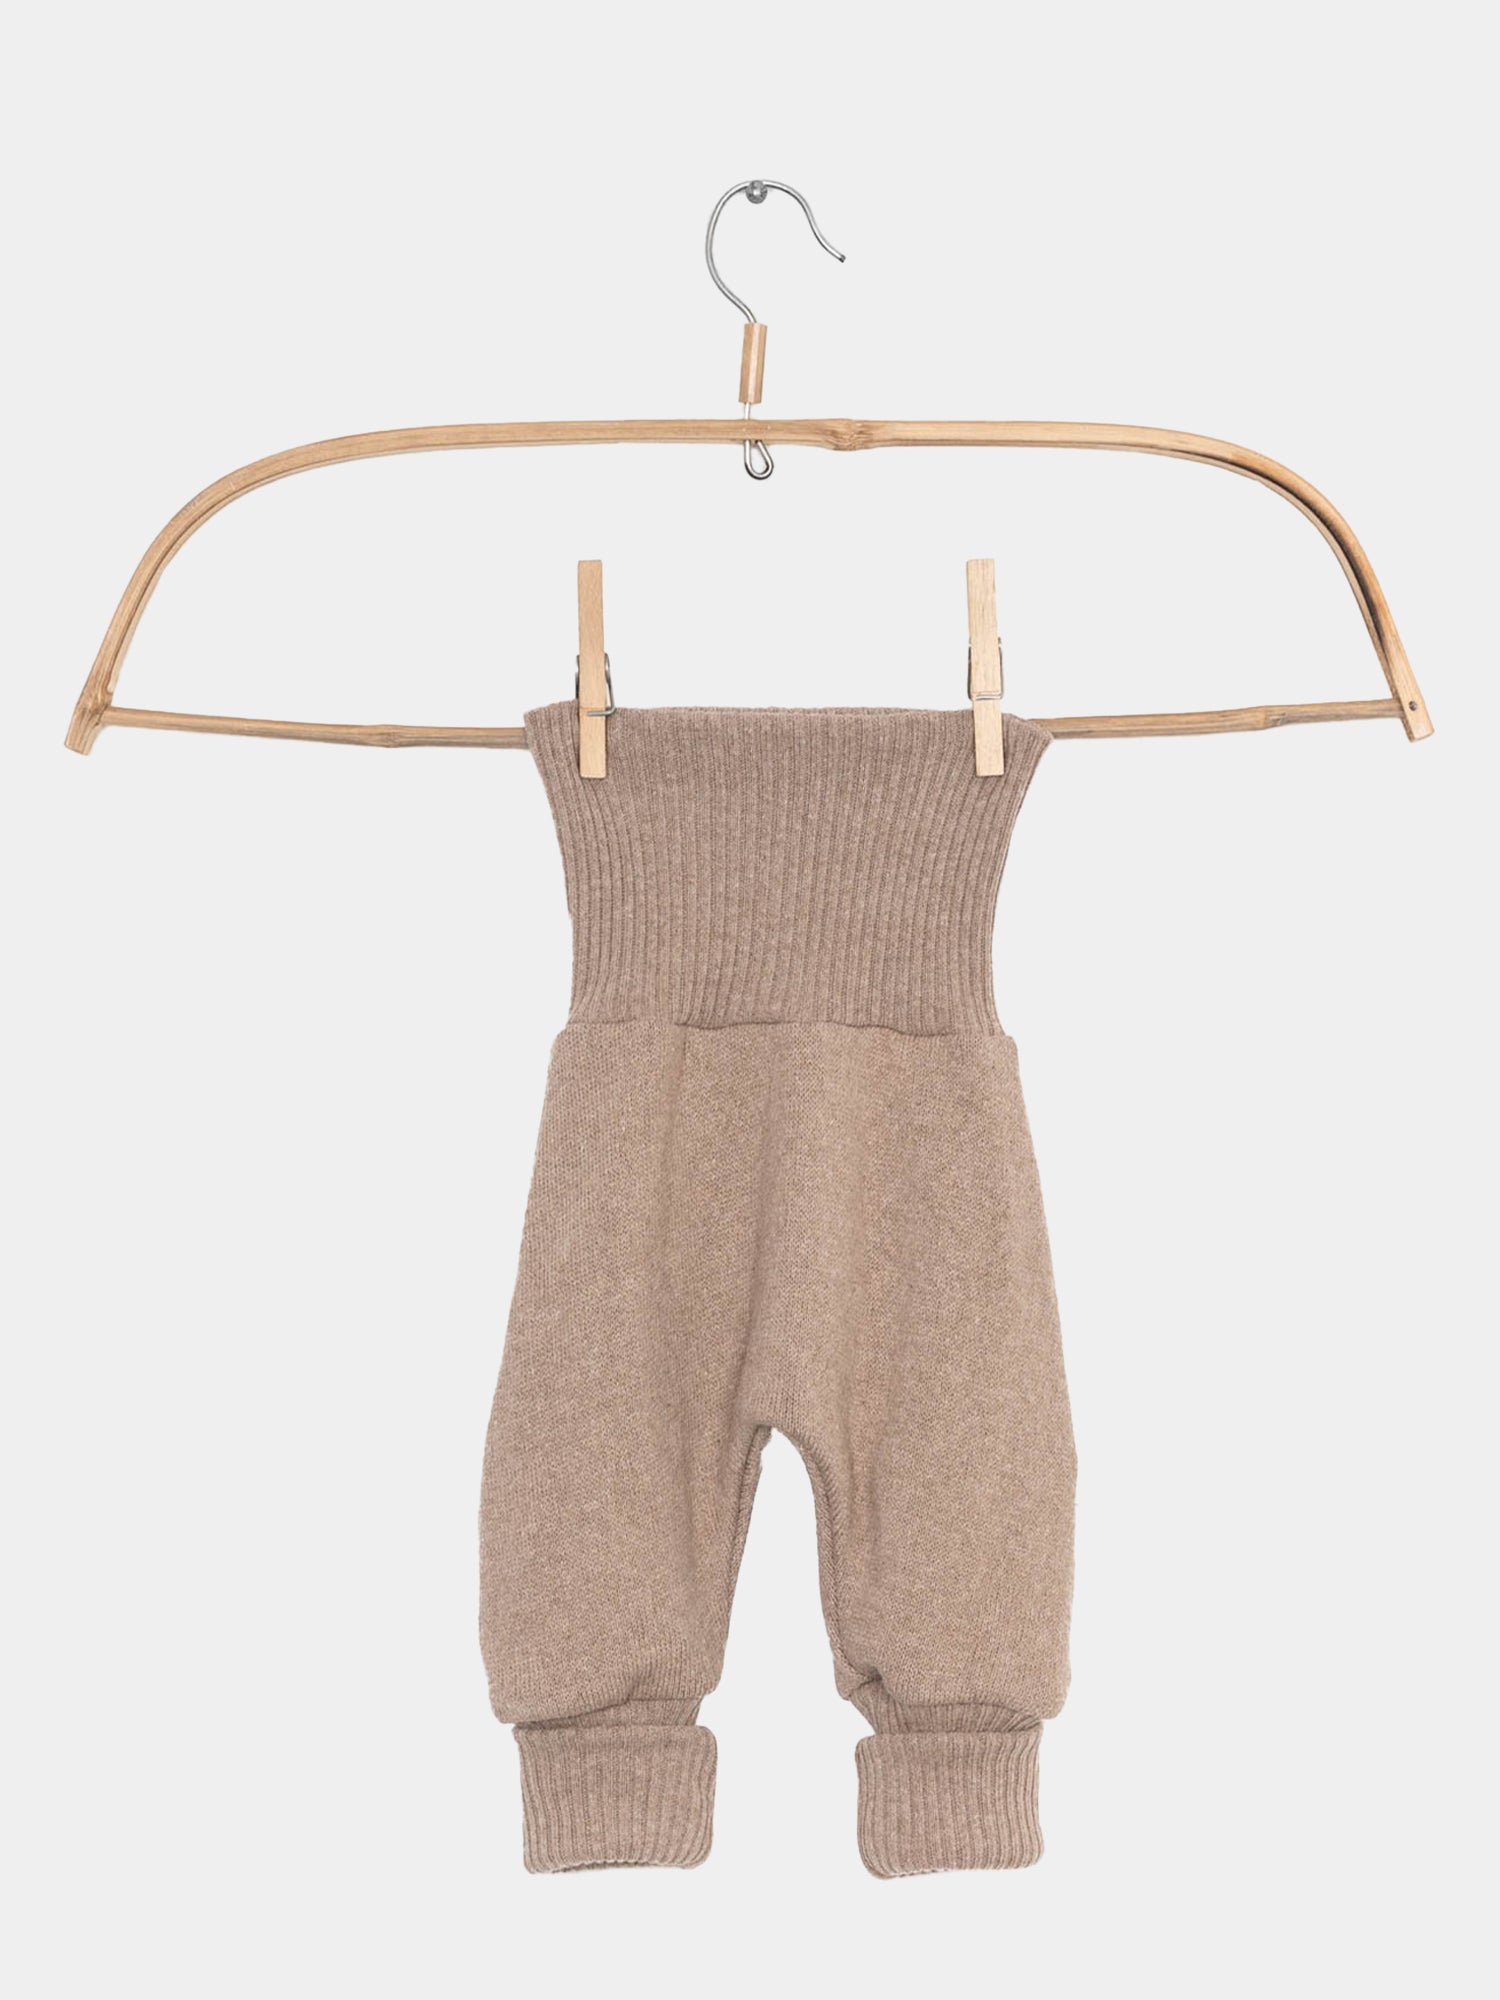 Baby knicker knit - Oats